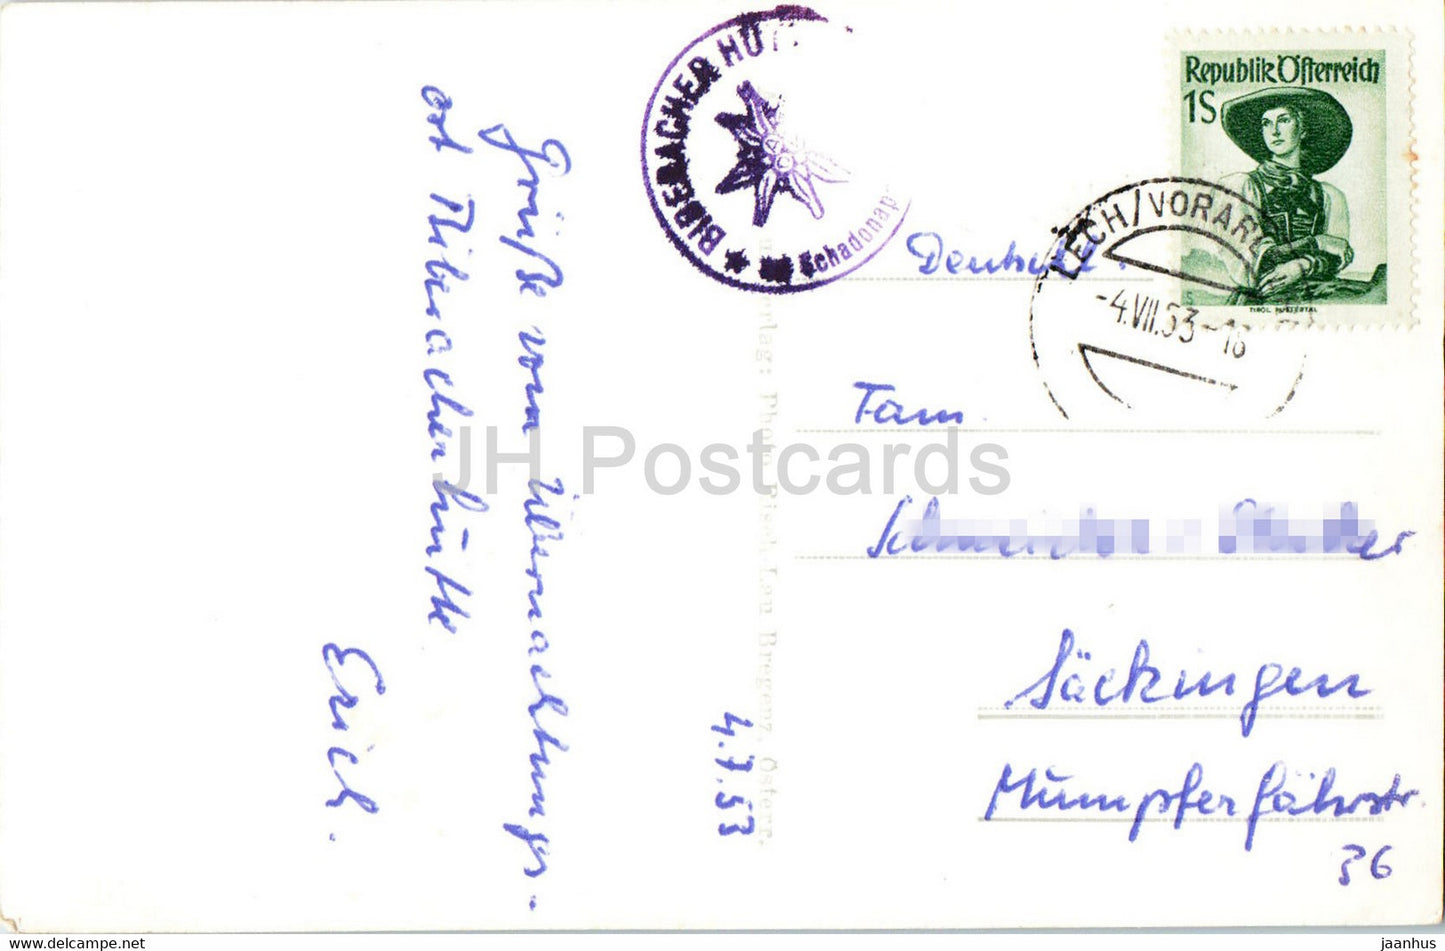 Biberacherhütte 1860 mg Braunarlspitze - 12154 - alte Ansichtskarte - 1953 - Österreich - gebraucht